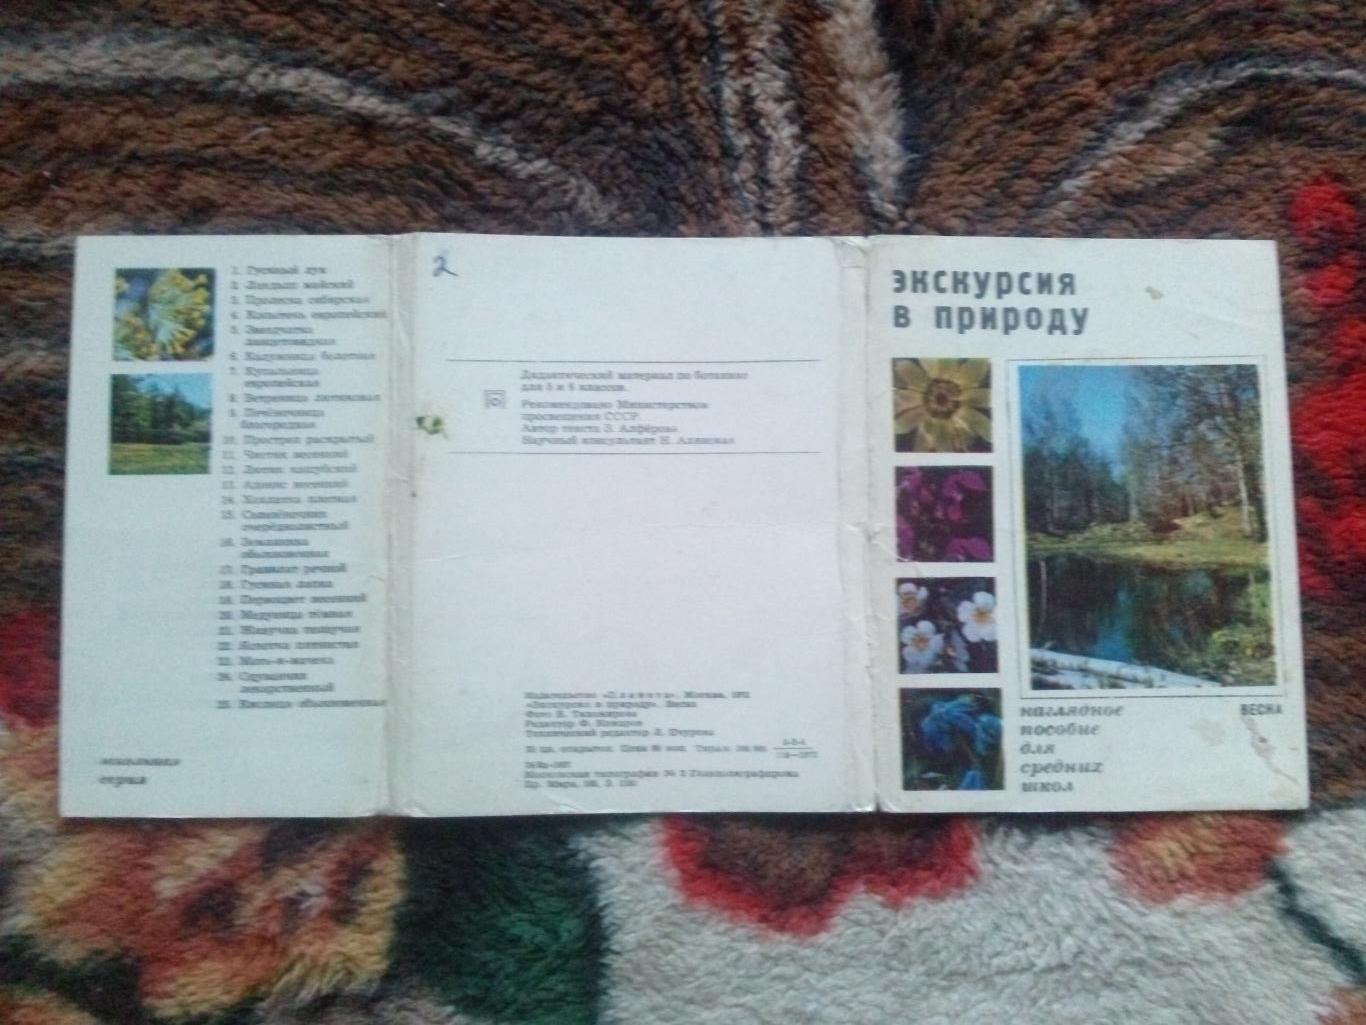 Экскурсия в природу 1972 г. полный набор - 25 открыток (растения флора цветы) 1